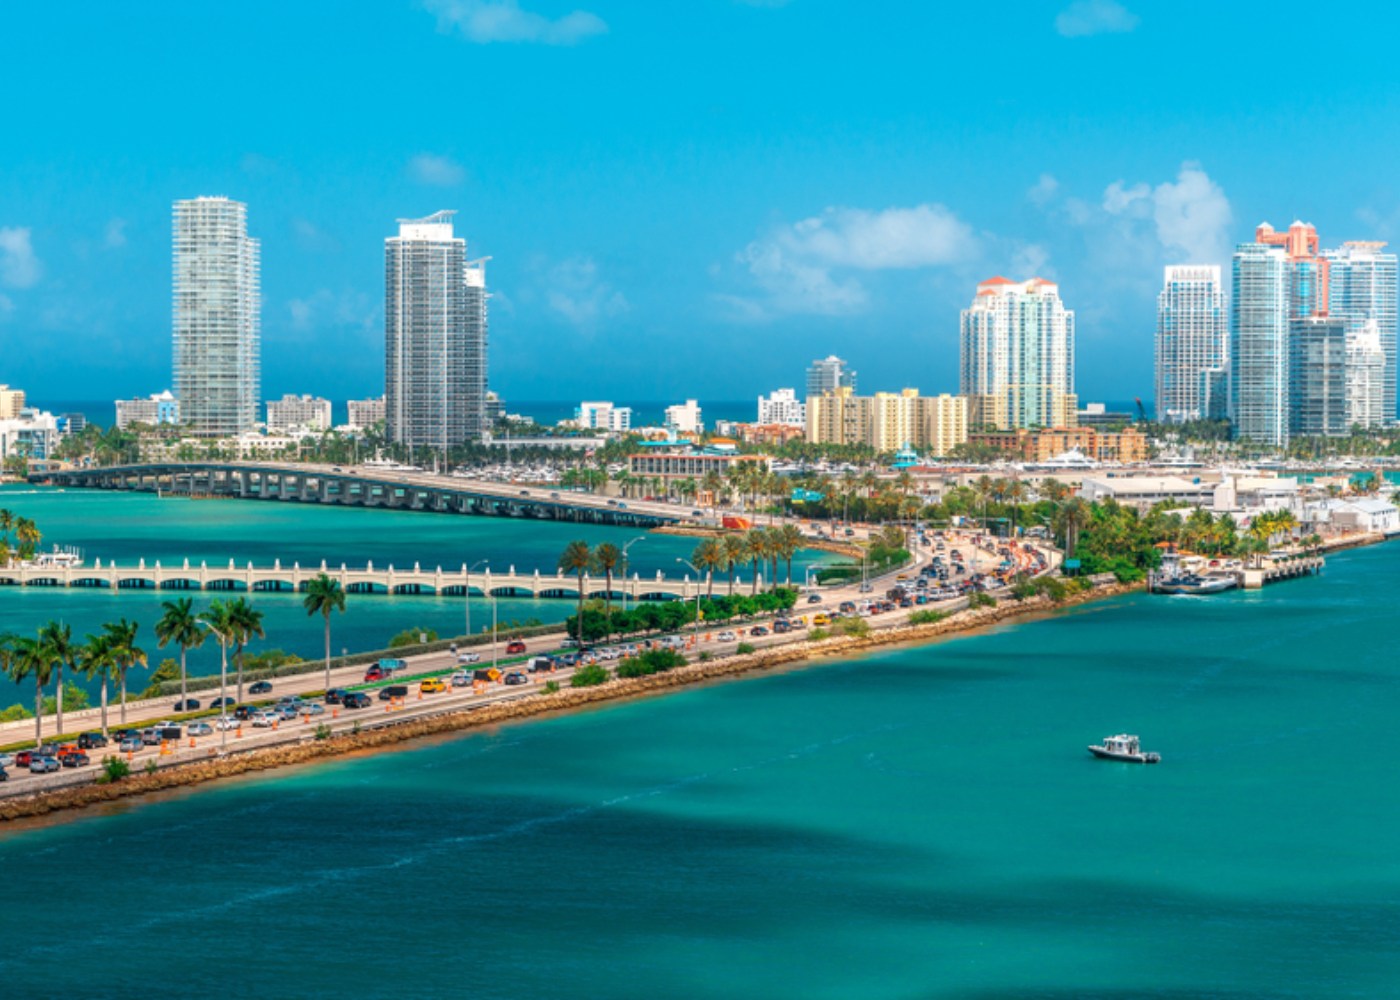 Vista do Porto de Miami